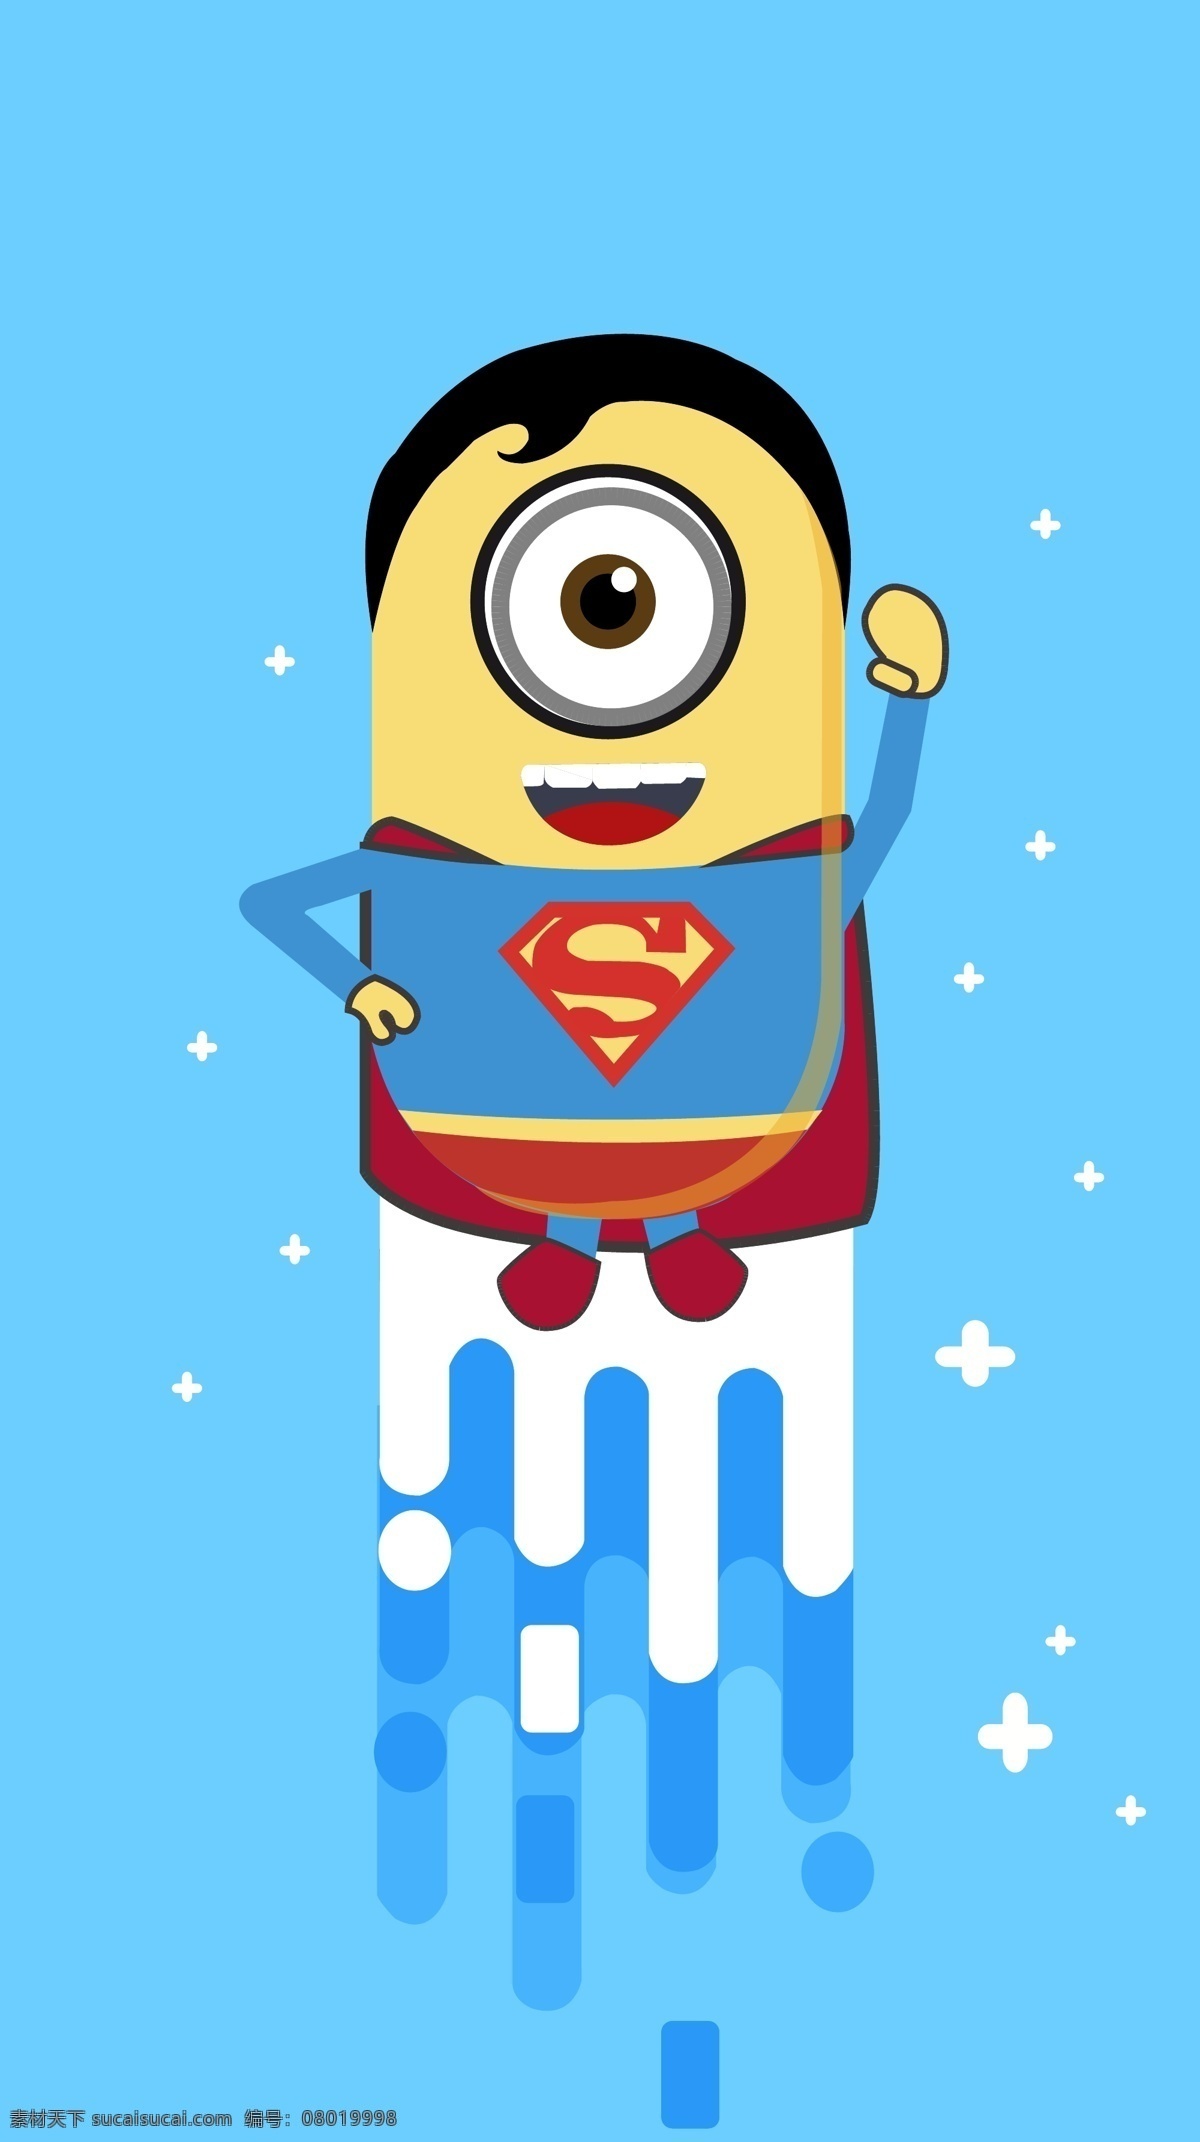 超人 小黄 人 创意 超人小黄人 超人图形 小黄人图形 图形创意 飞翔图形 界面图形创意 北大青鸟 动漫动画 动漫人物